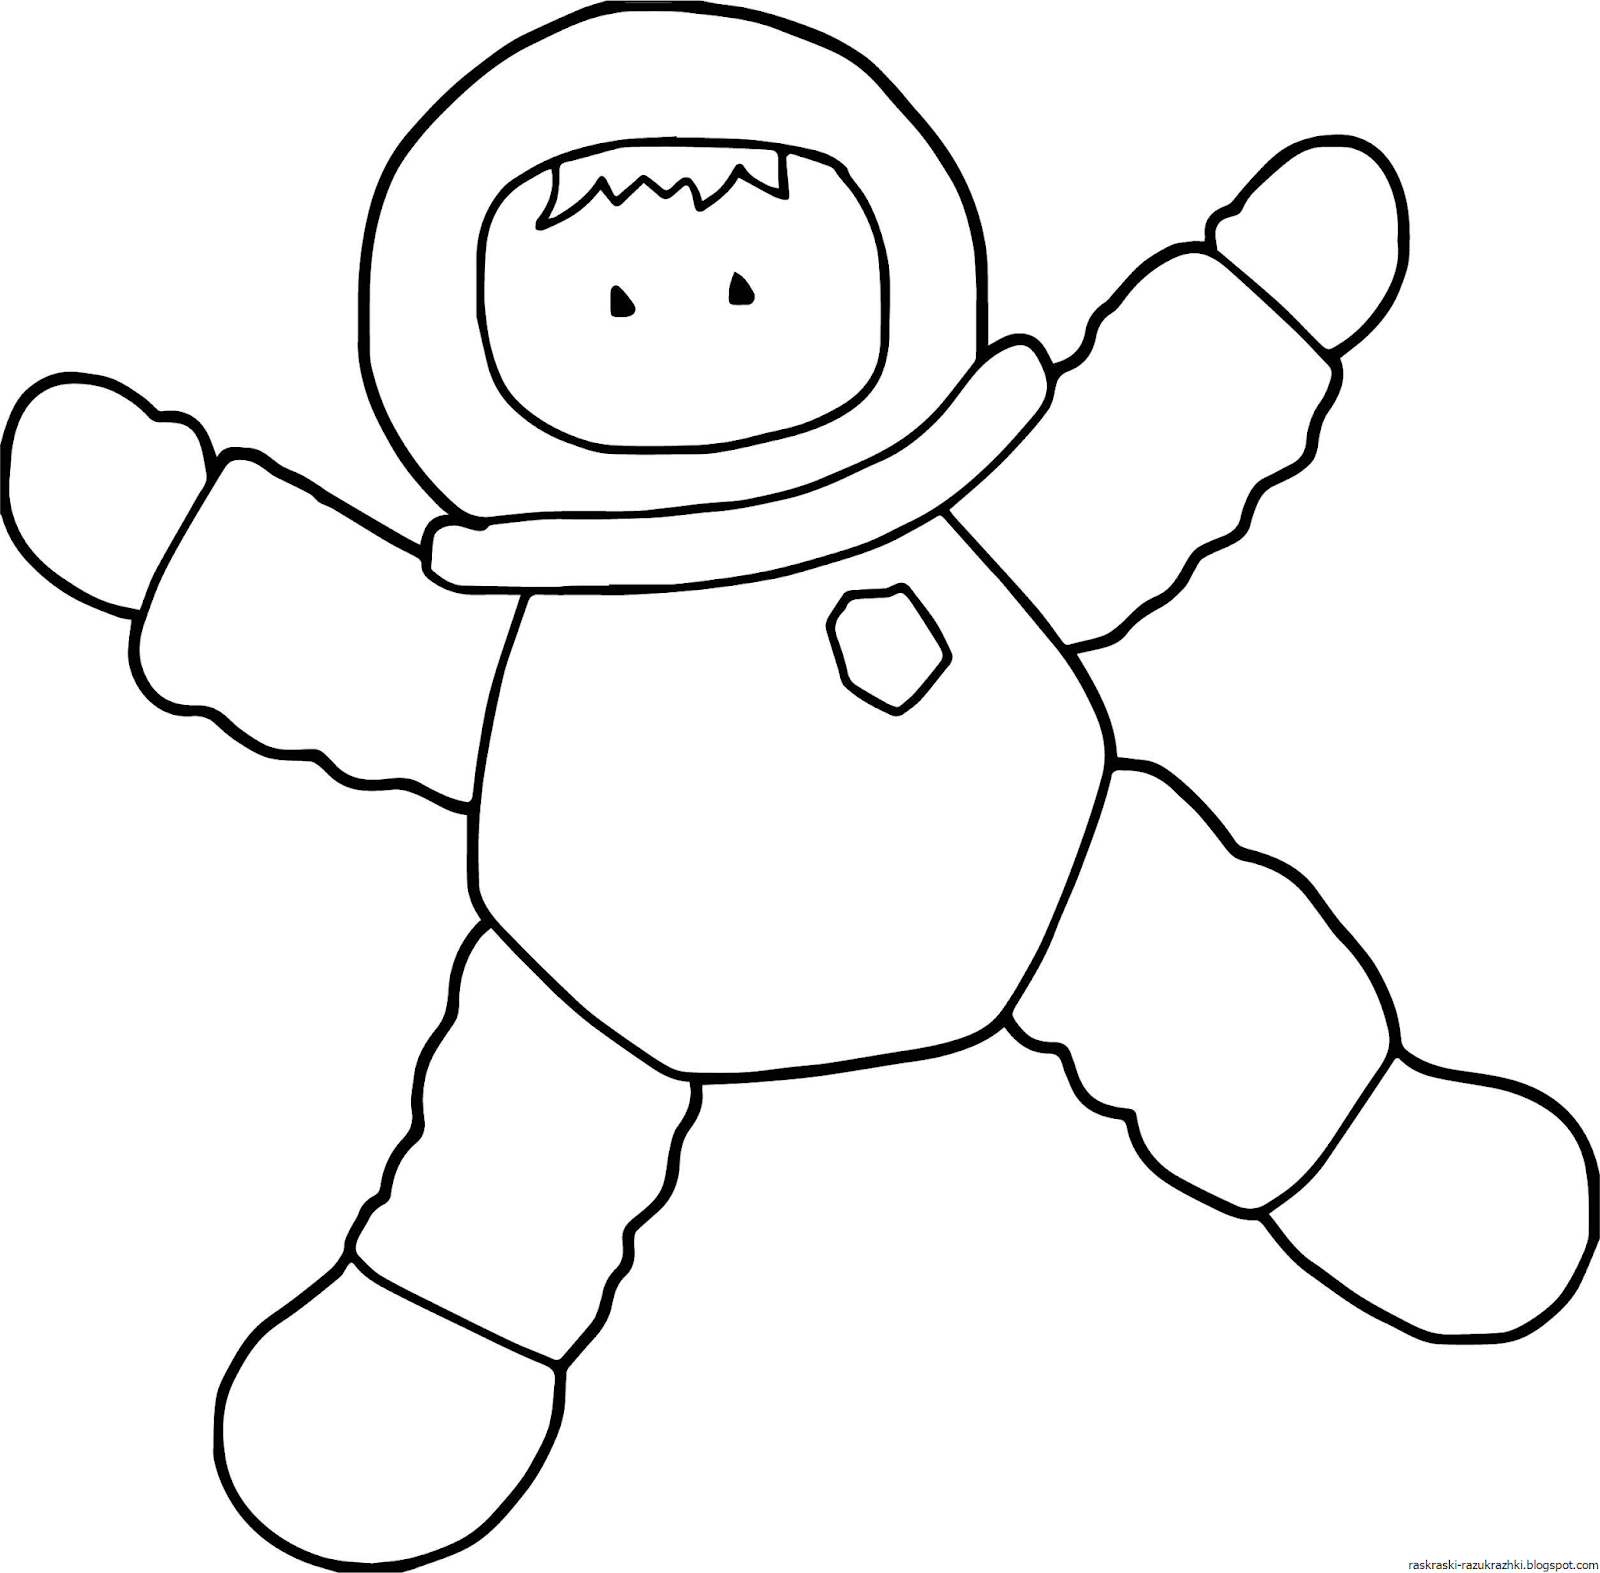 Космонавт шаблон для вырезания распечатать. Космонавт раскраска для детей. Космонавт трафарет для детей. Космонавт картинка для детей раскраска. Космонавт раскраска для малышей.